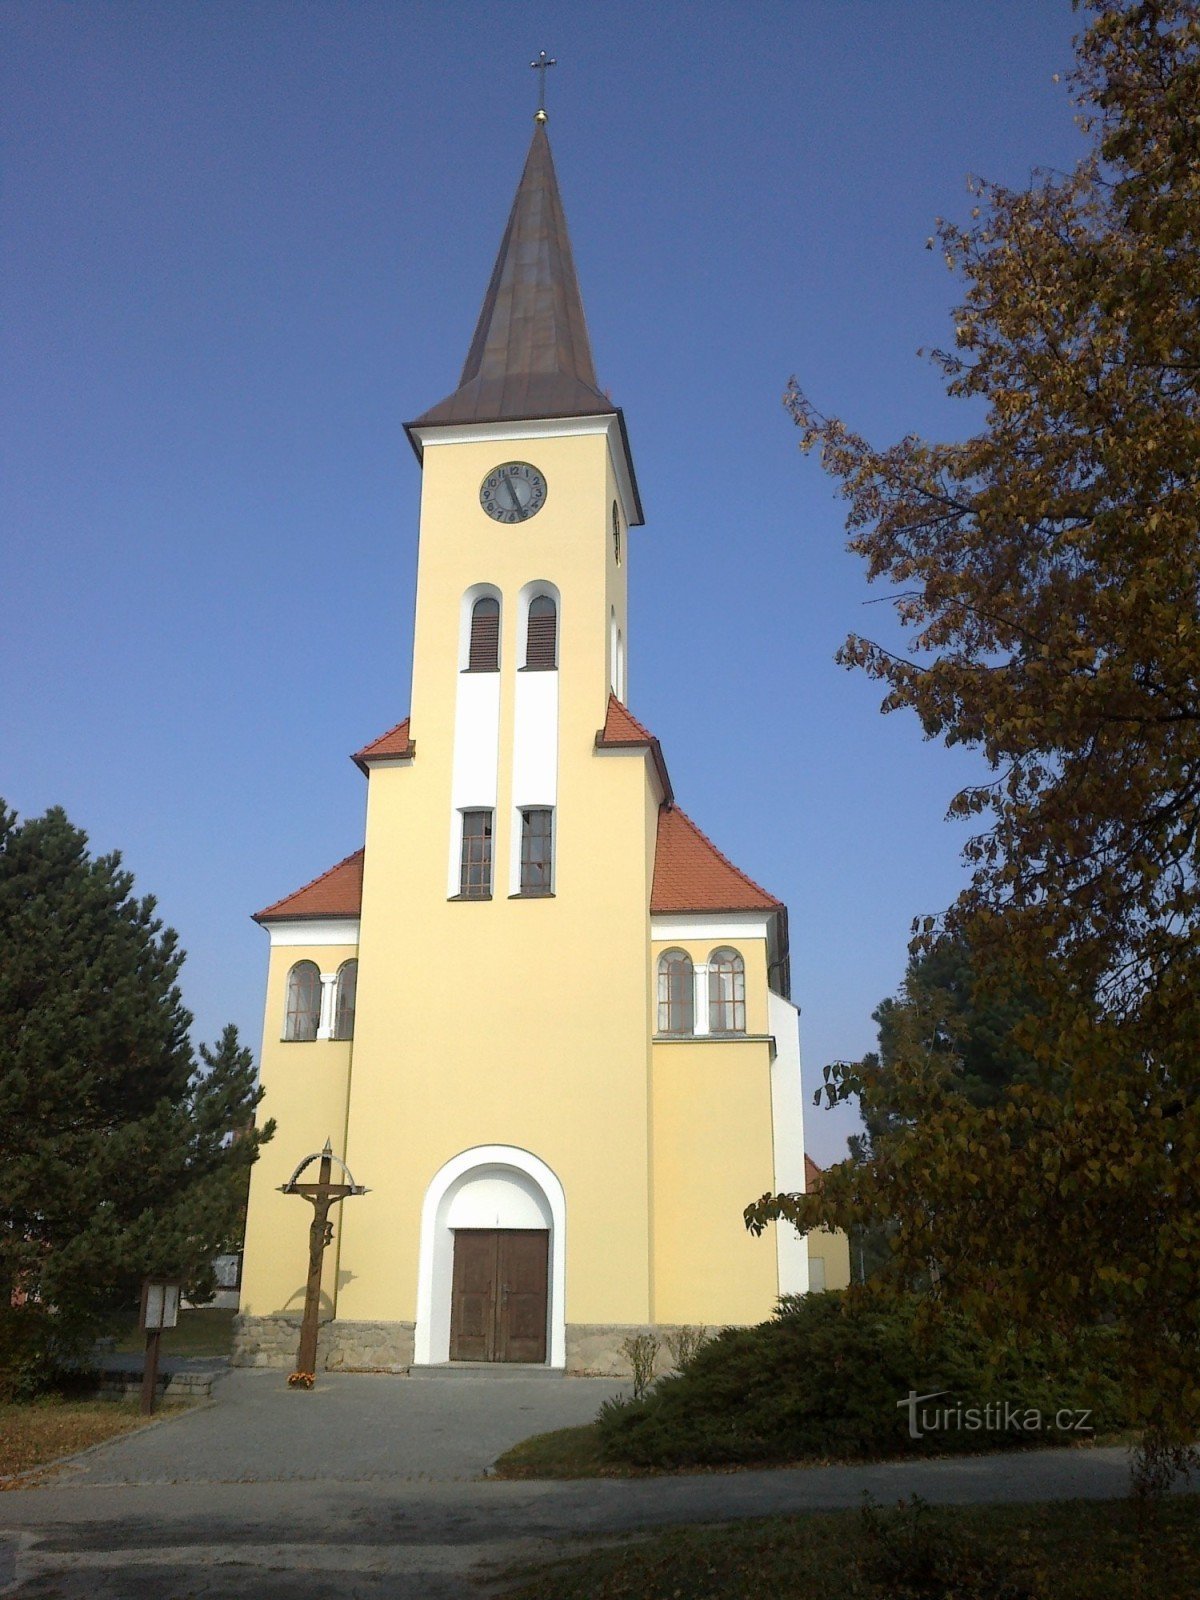 Biserica din Vrbic.